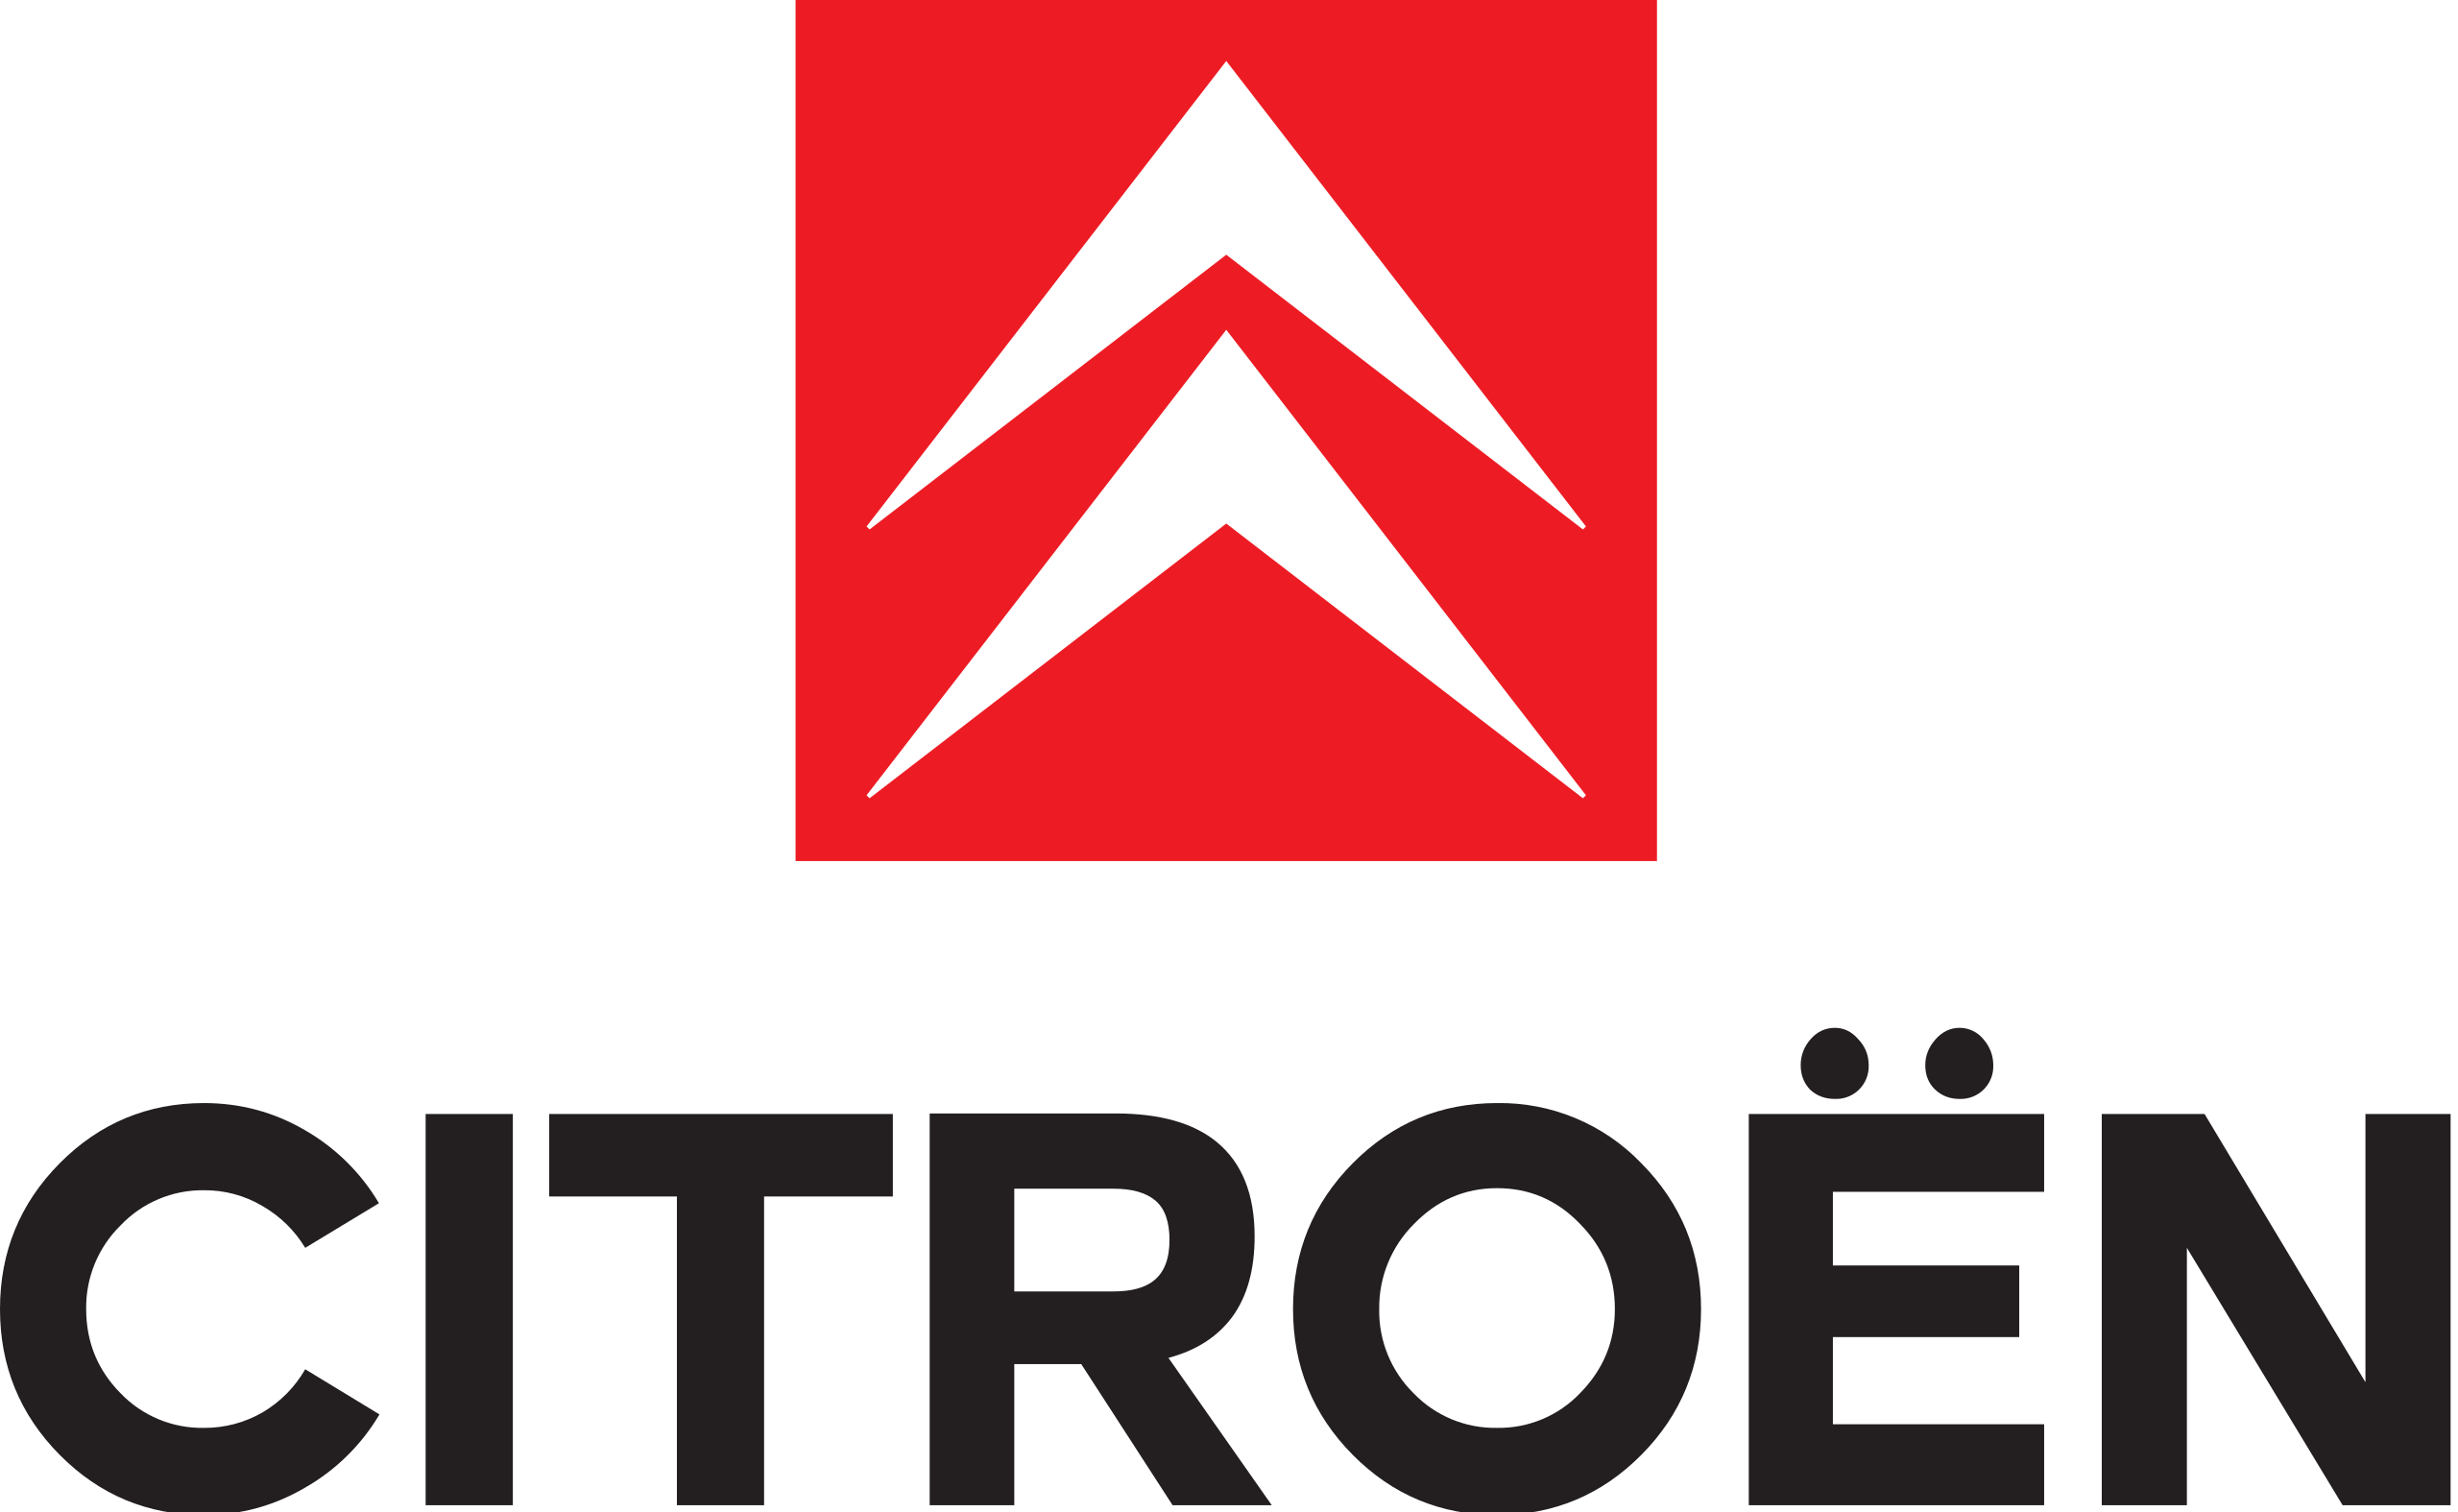 File:Citroën-Logo.svg - Wikimedia Commons